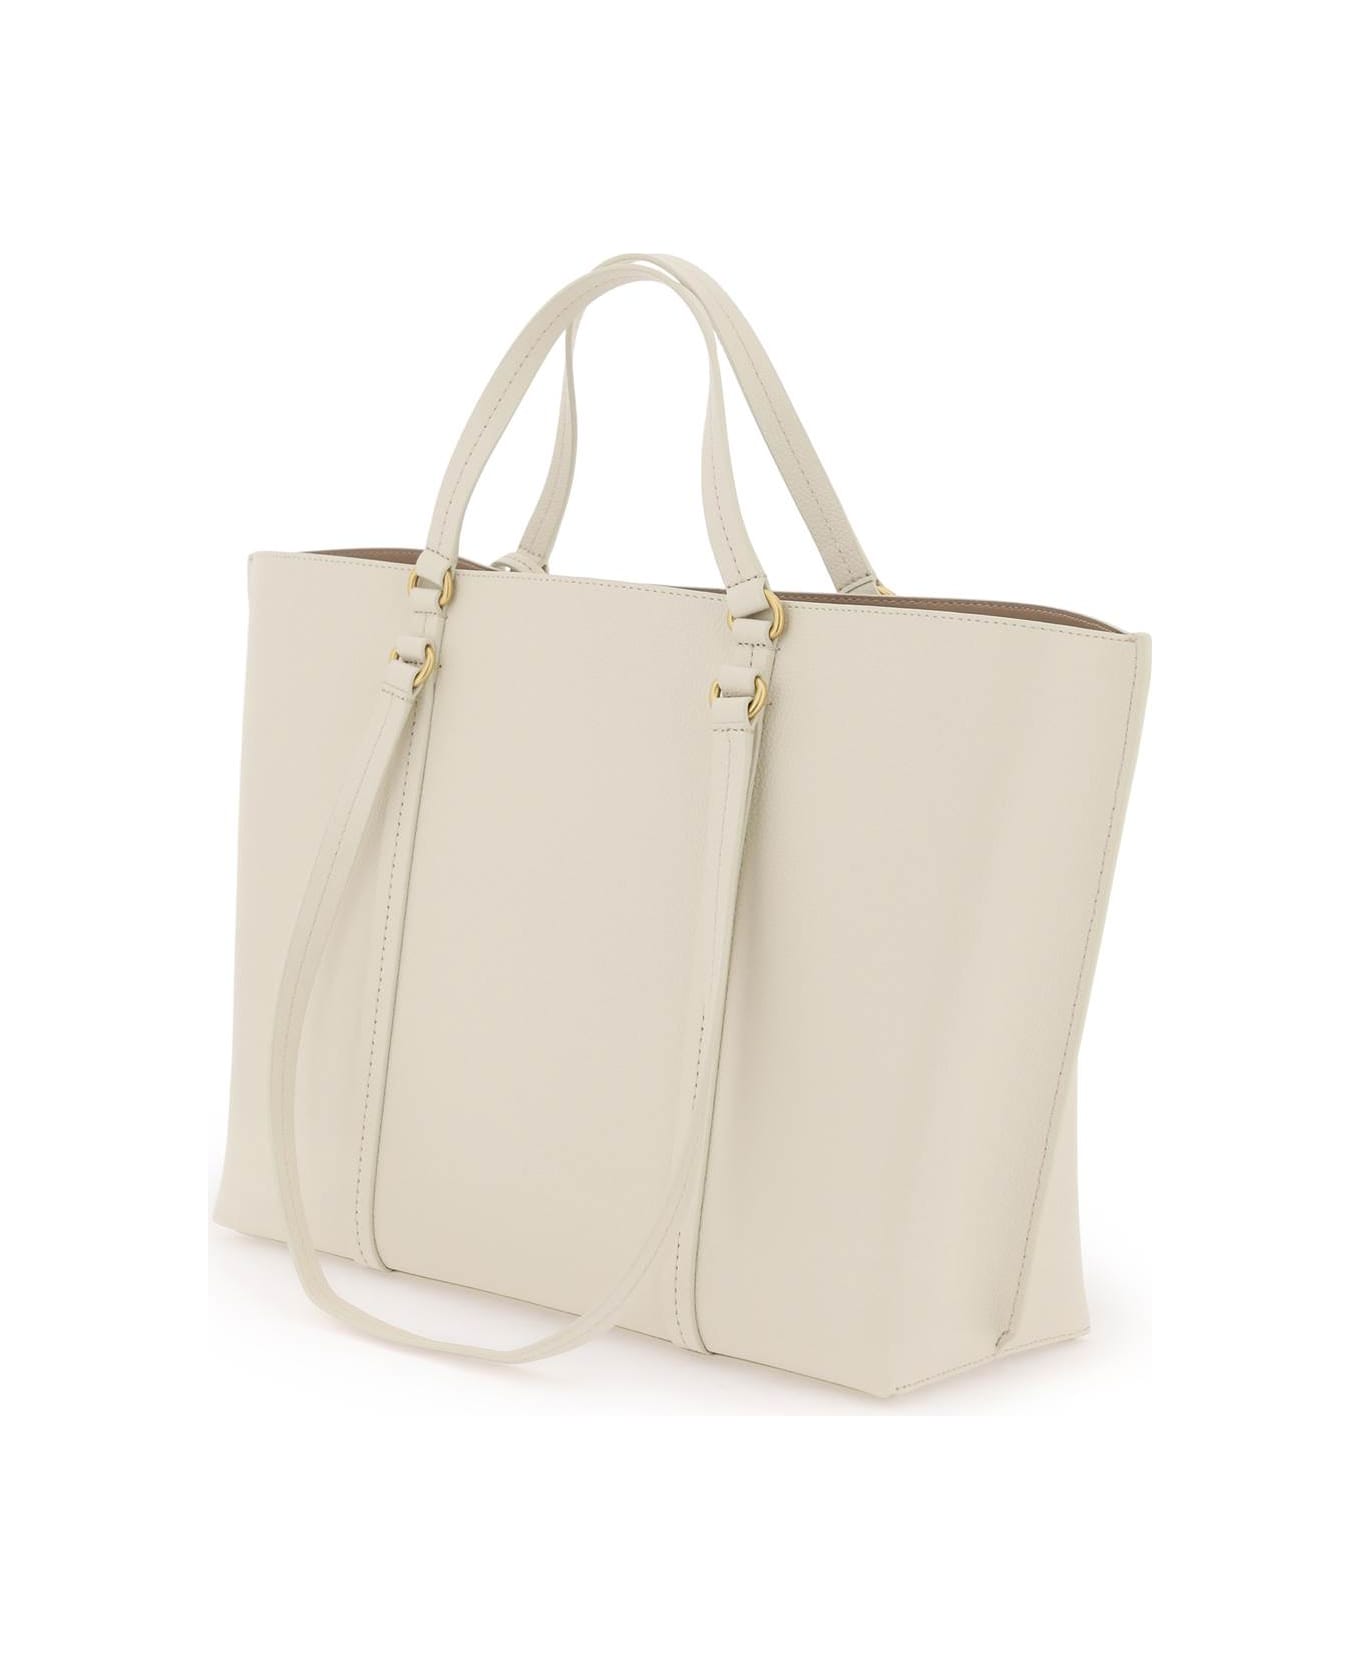 Pinko Shopper Bag - BIANCO SETA ANTIQUE GOLD (White)